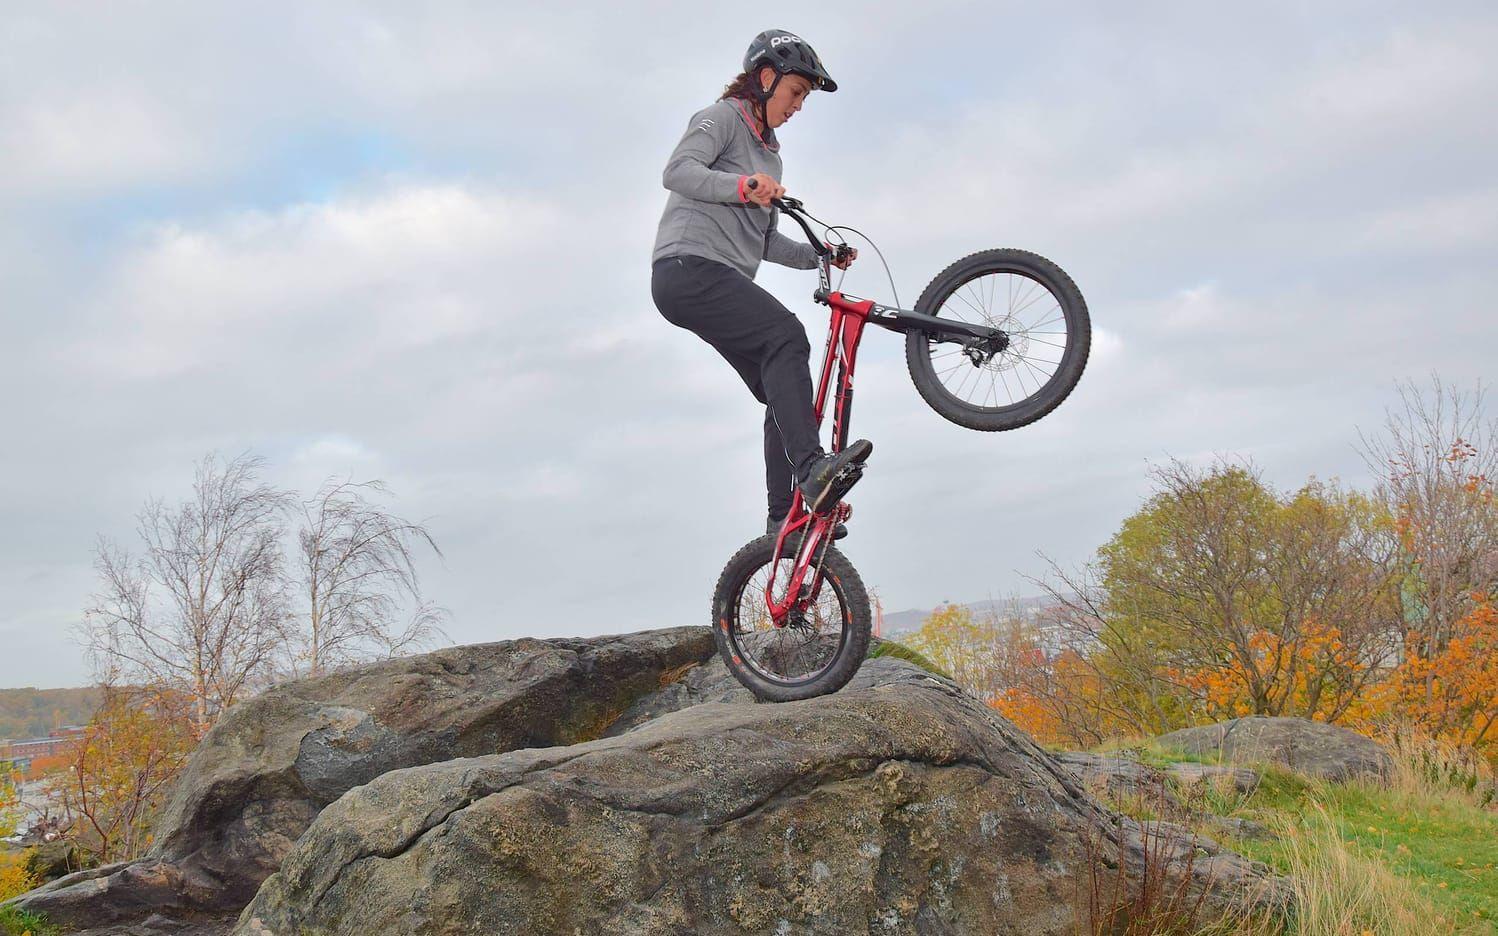 Balans, timing och koordination. Det är enligt Nadine Kåmark de egenskaper som är viktigast i cykeltrial. Hon brukar träna på klippor, exempelvis på Smarholmen i Vallda, i Mollösund eller som här i Masthuggsbergen. Bild: Clas-Göran Sandblom